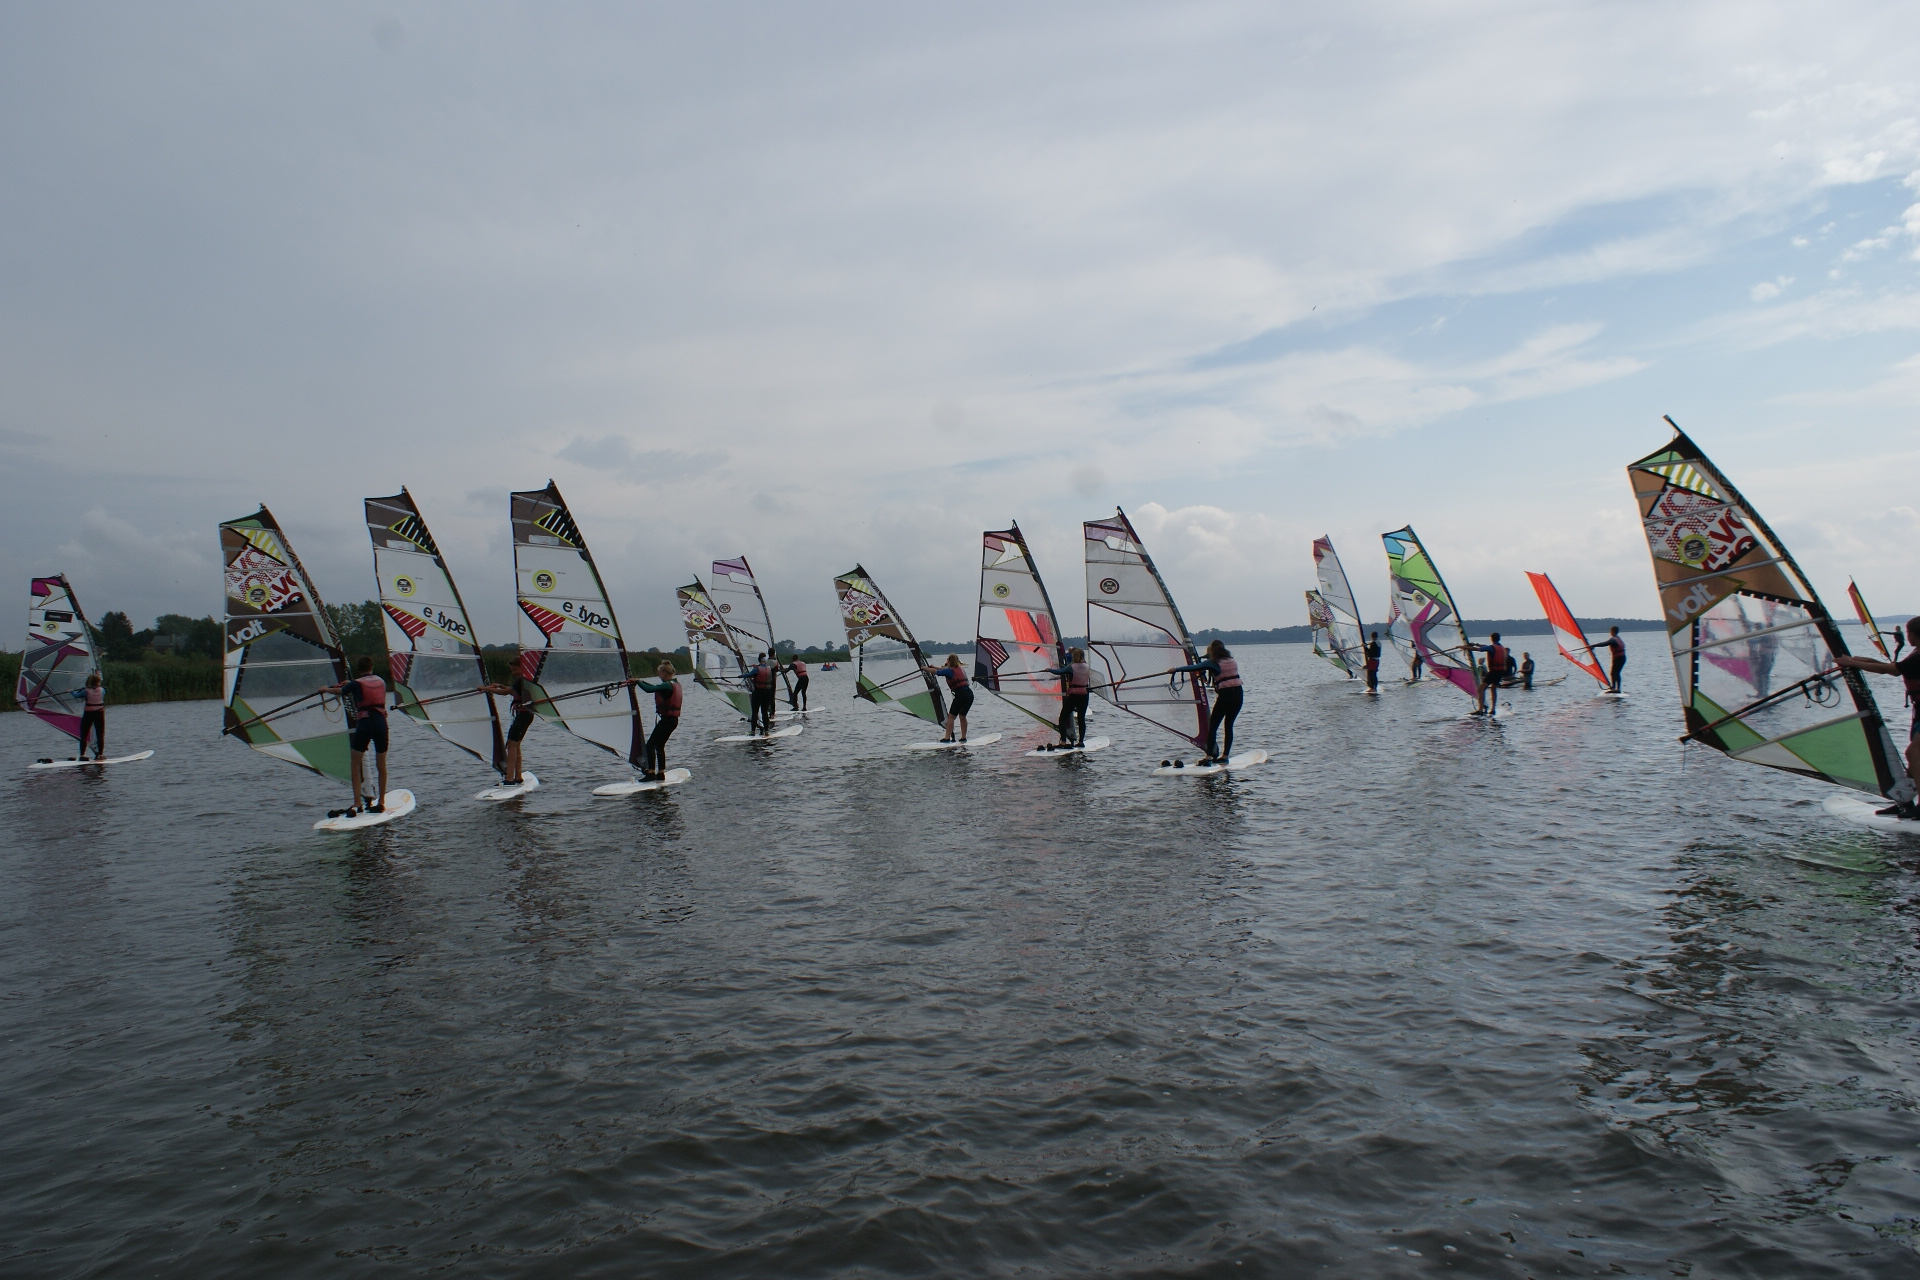 Obóz windsurfingowy